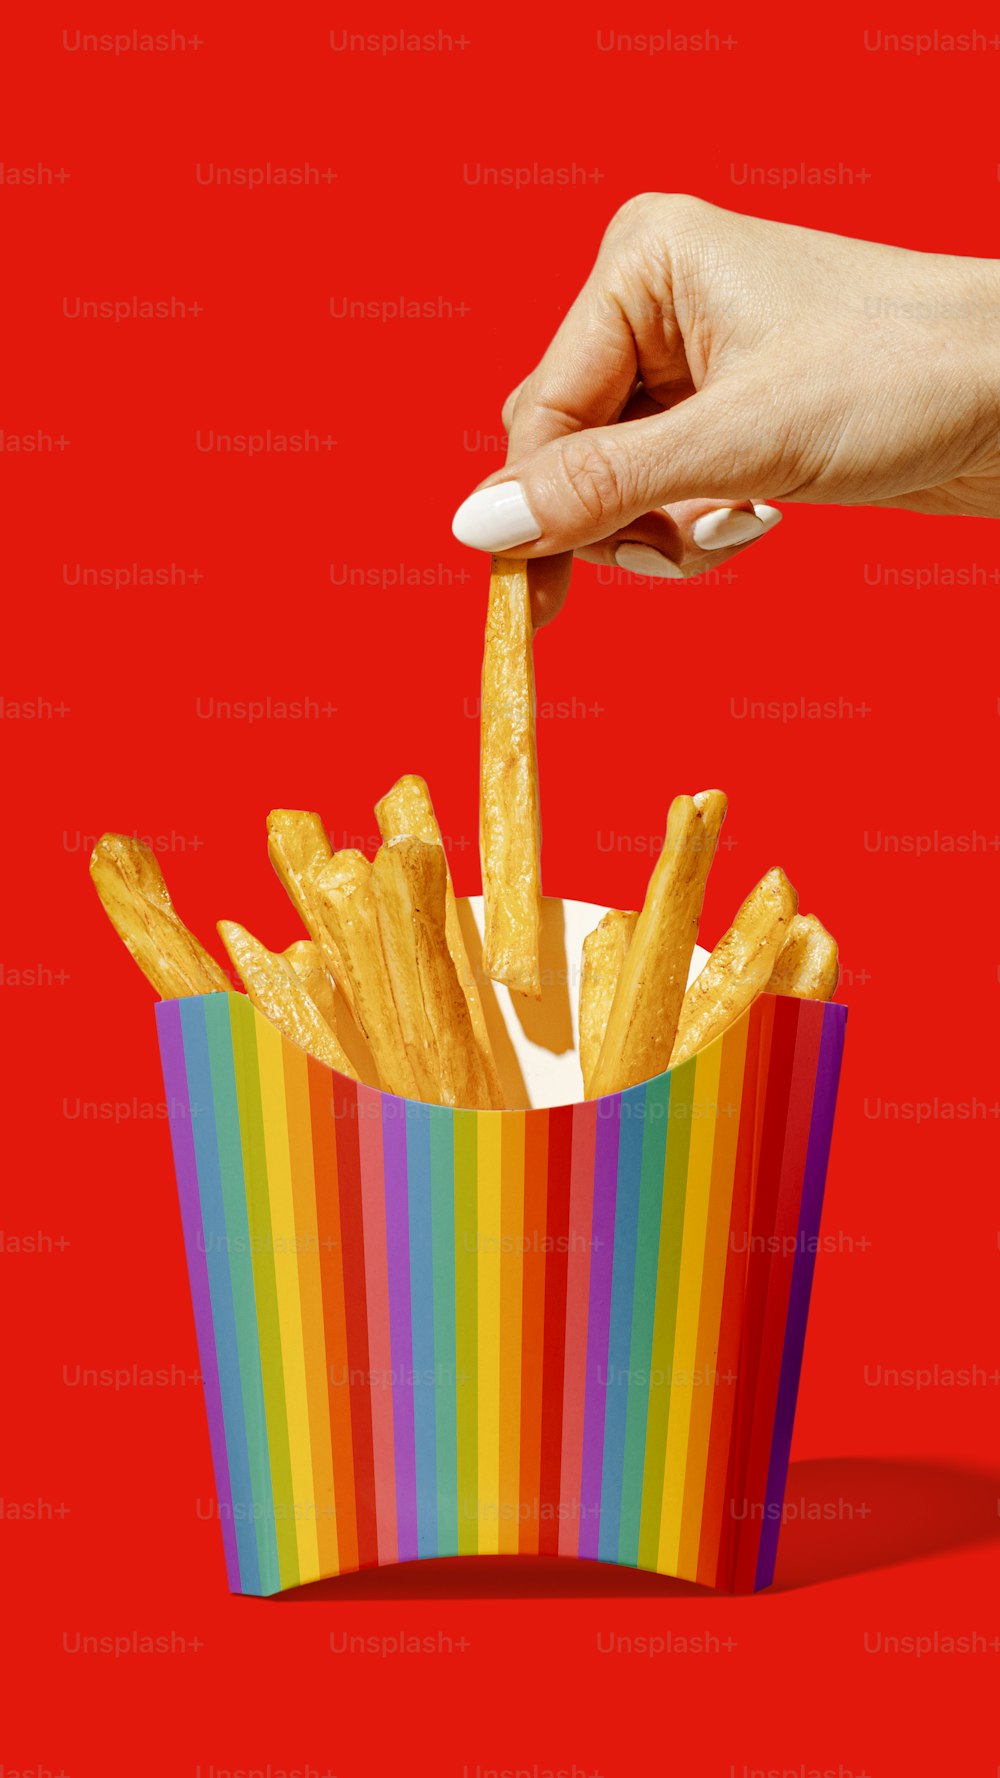 Una mano buscando papas fritas en una caja colorida